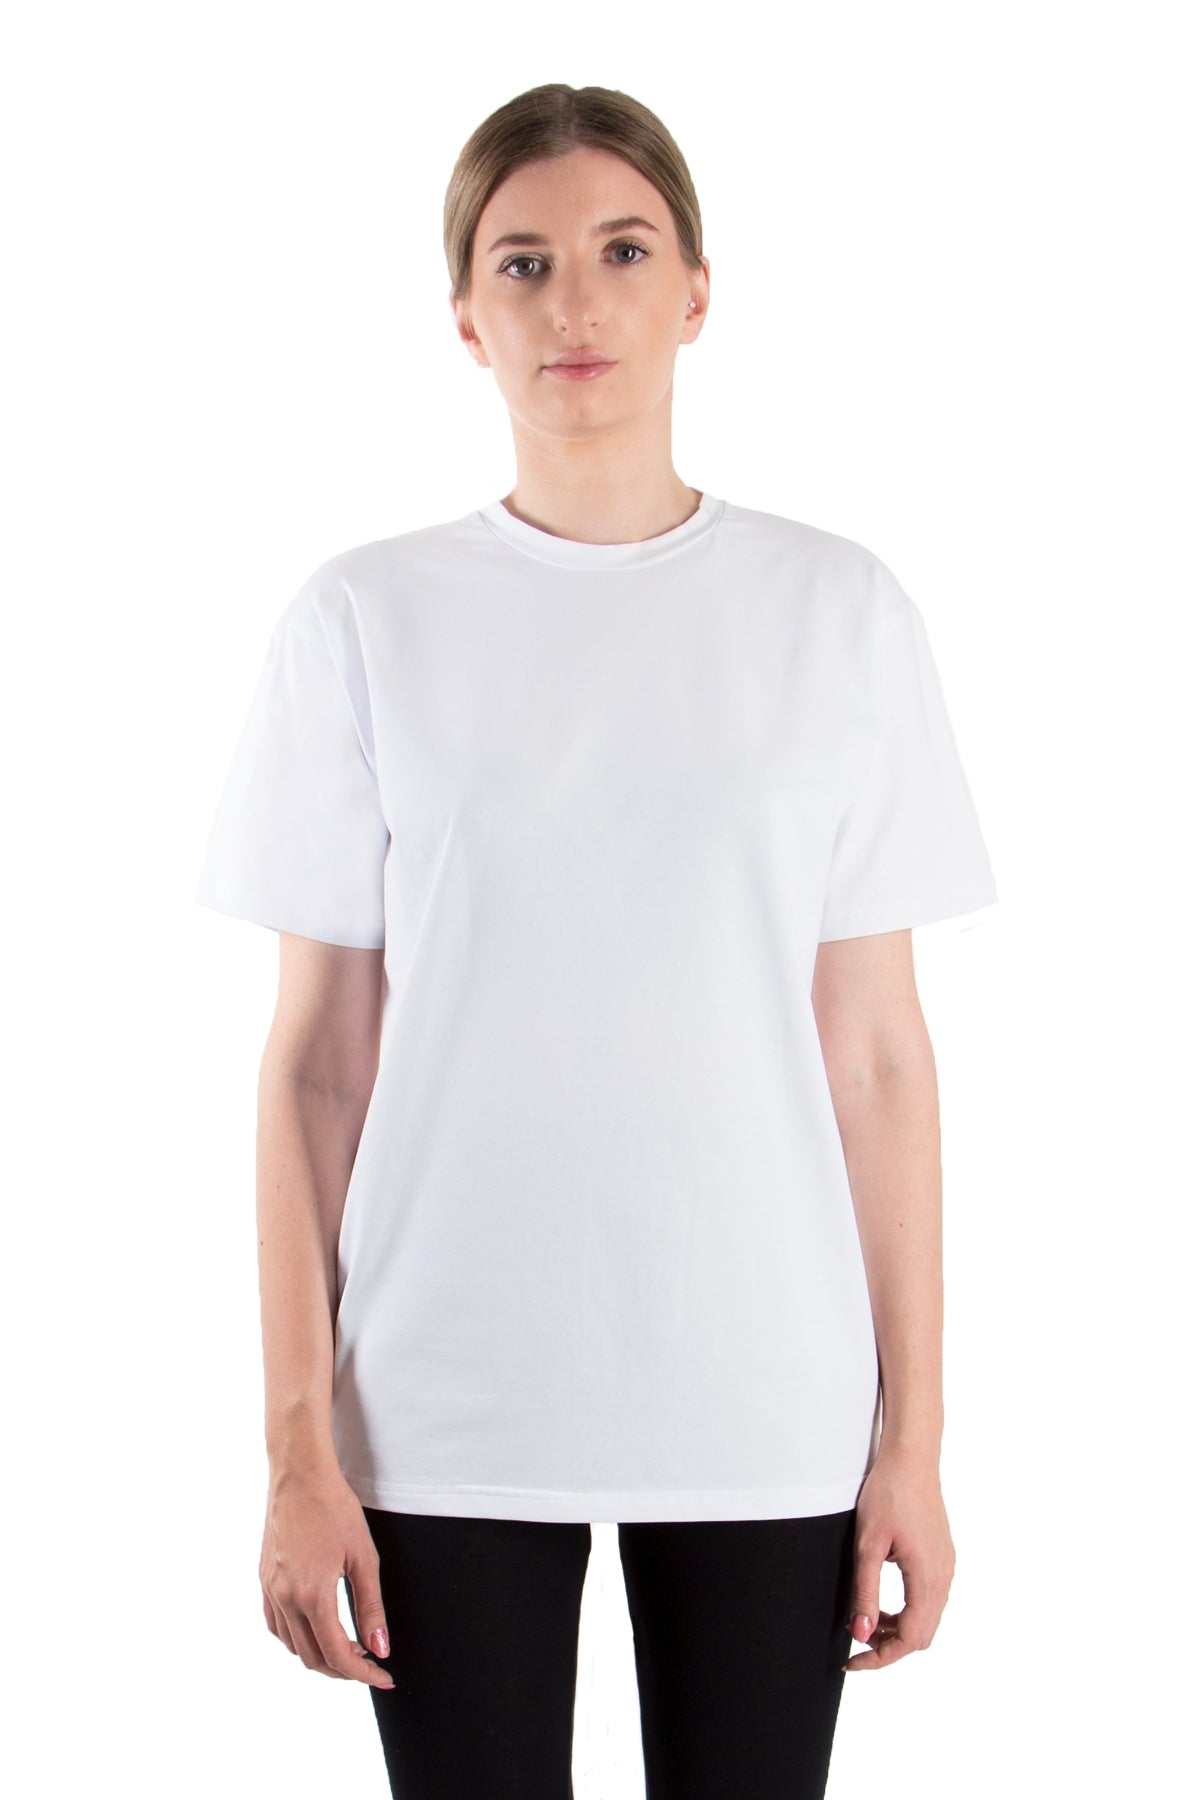 T-Shirt Rundhals (10er-Pack) - greymelange